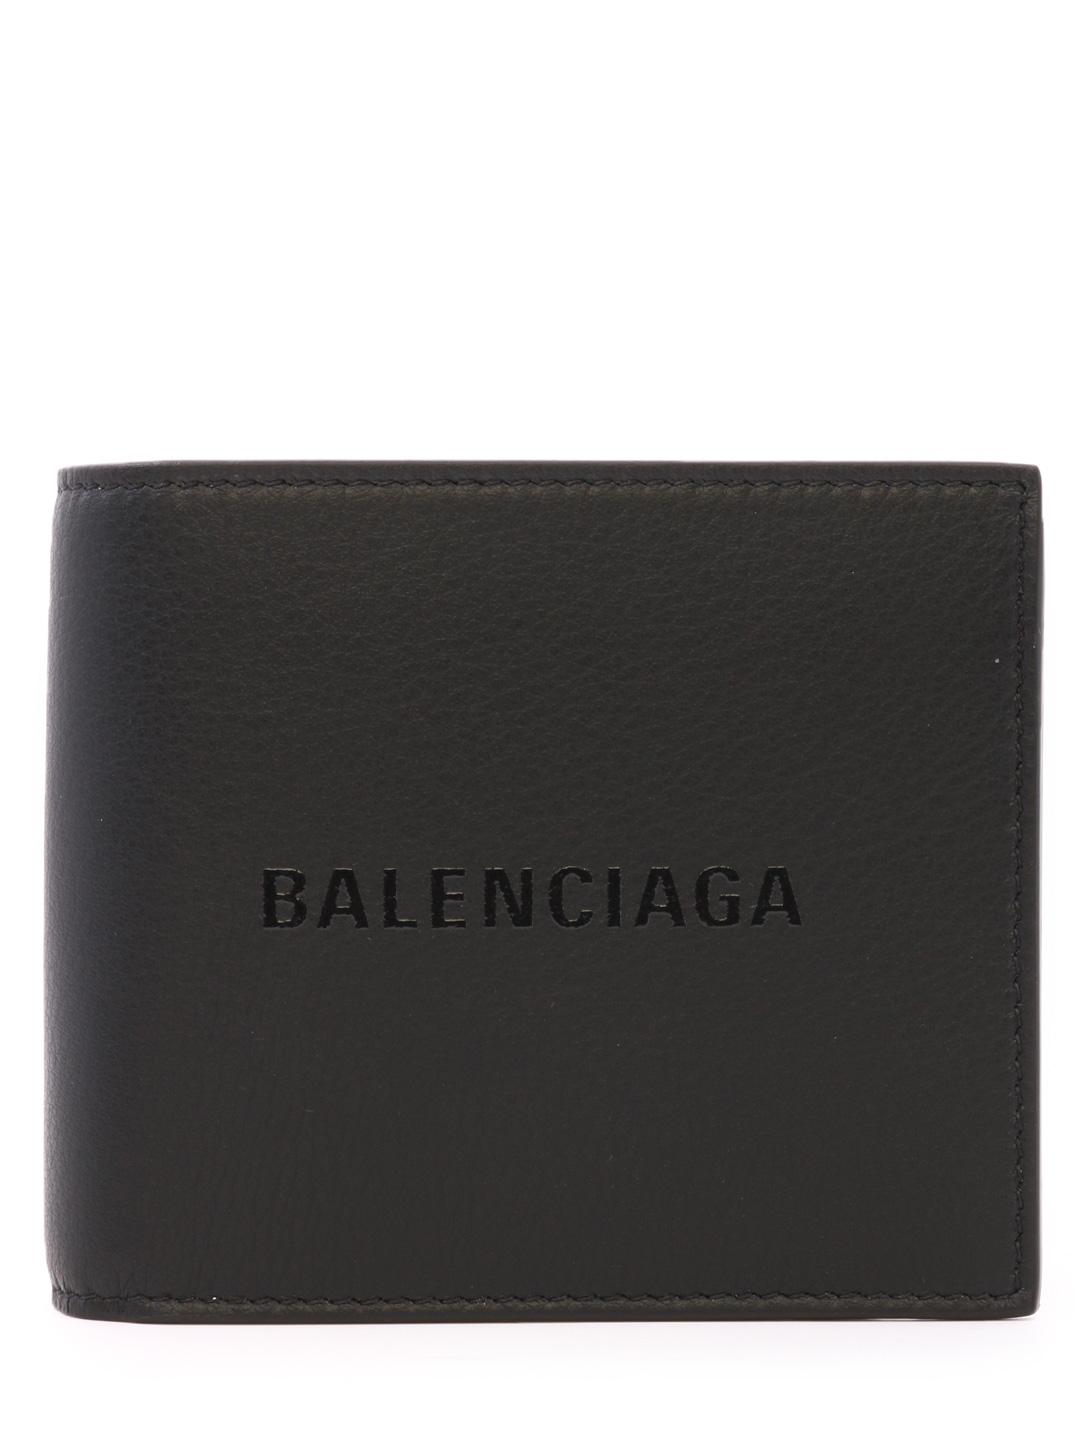 balenciaga everyday square wallet